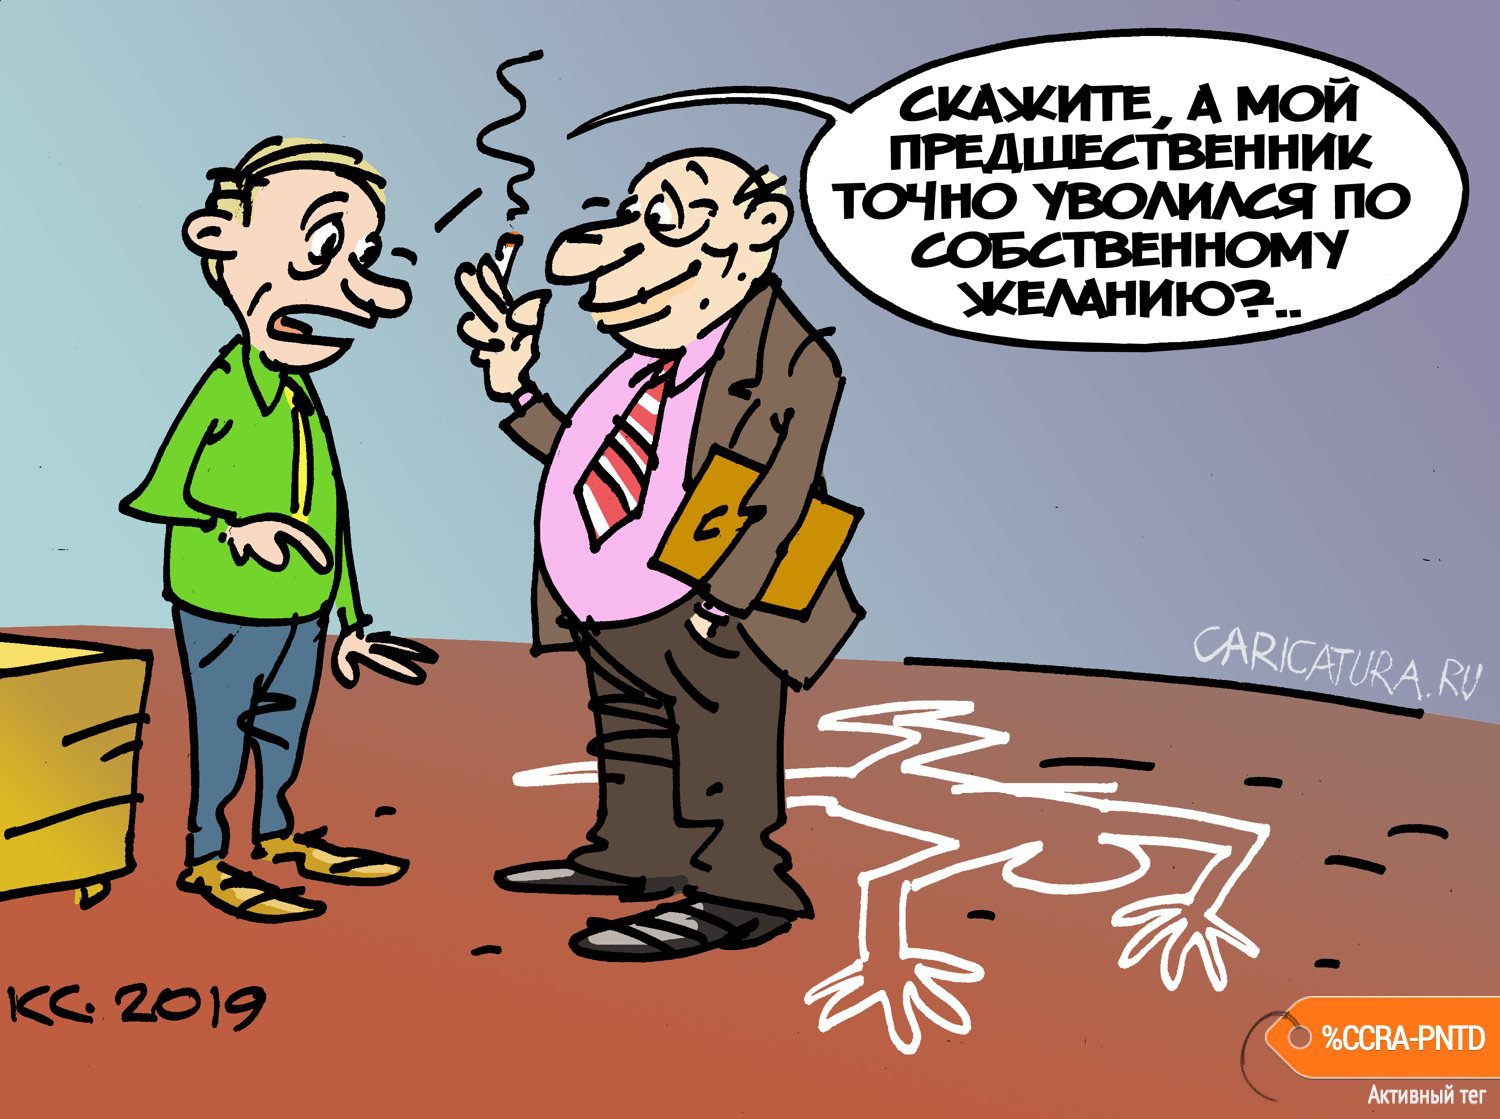 Карикатура "По собственному желанию", Вячеслав Капрельянц